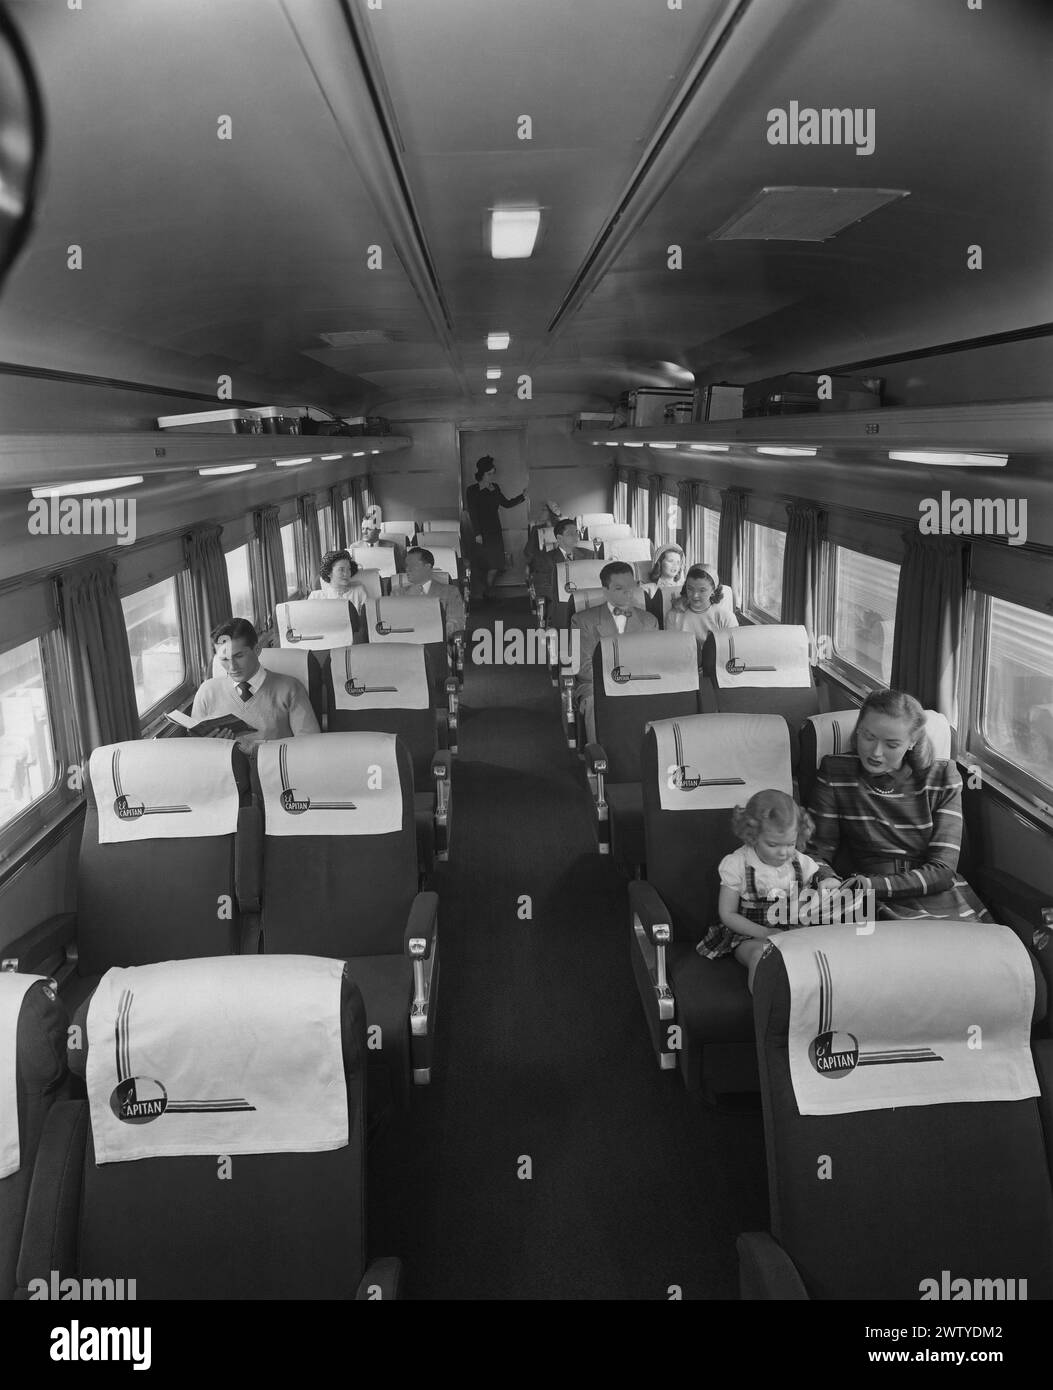 Vue intérieure des fauteuils de confort du train El Capitan, qui était un train de voyageurs simplifié exploité par l'Atchison, Topeka and Santa Fe Railway entre Chicago, Illinois, et Los Angeles, Californie. Il a fonctionné de 1938 à 1971 ; Amtrak a conservé le nom jusqu'en 1973 Banque D'Images